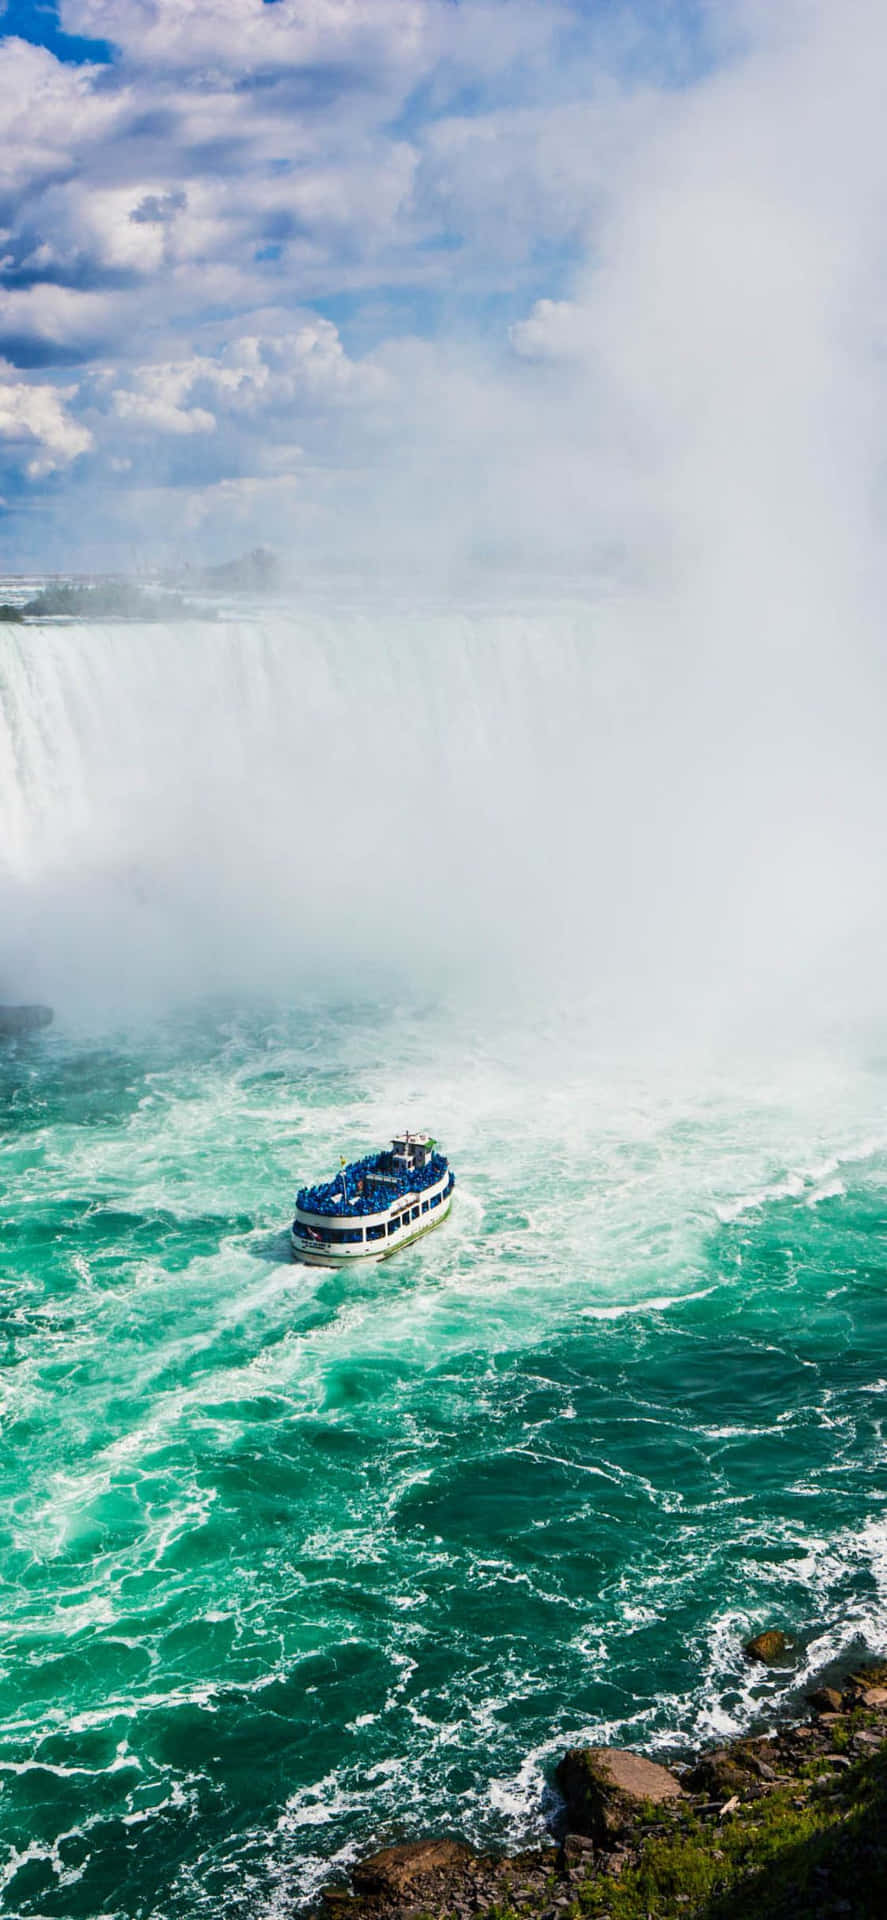 Plano De Fundo Do Iphone X Niagara Falls